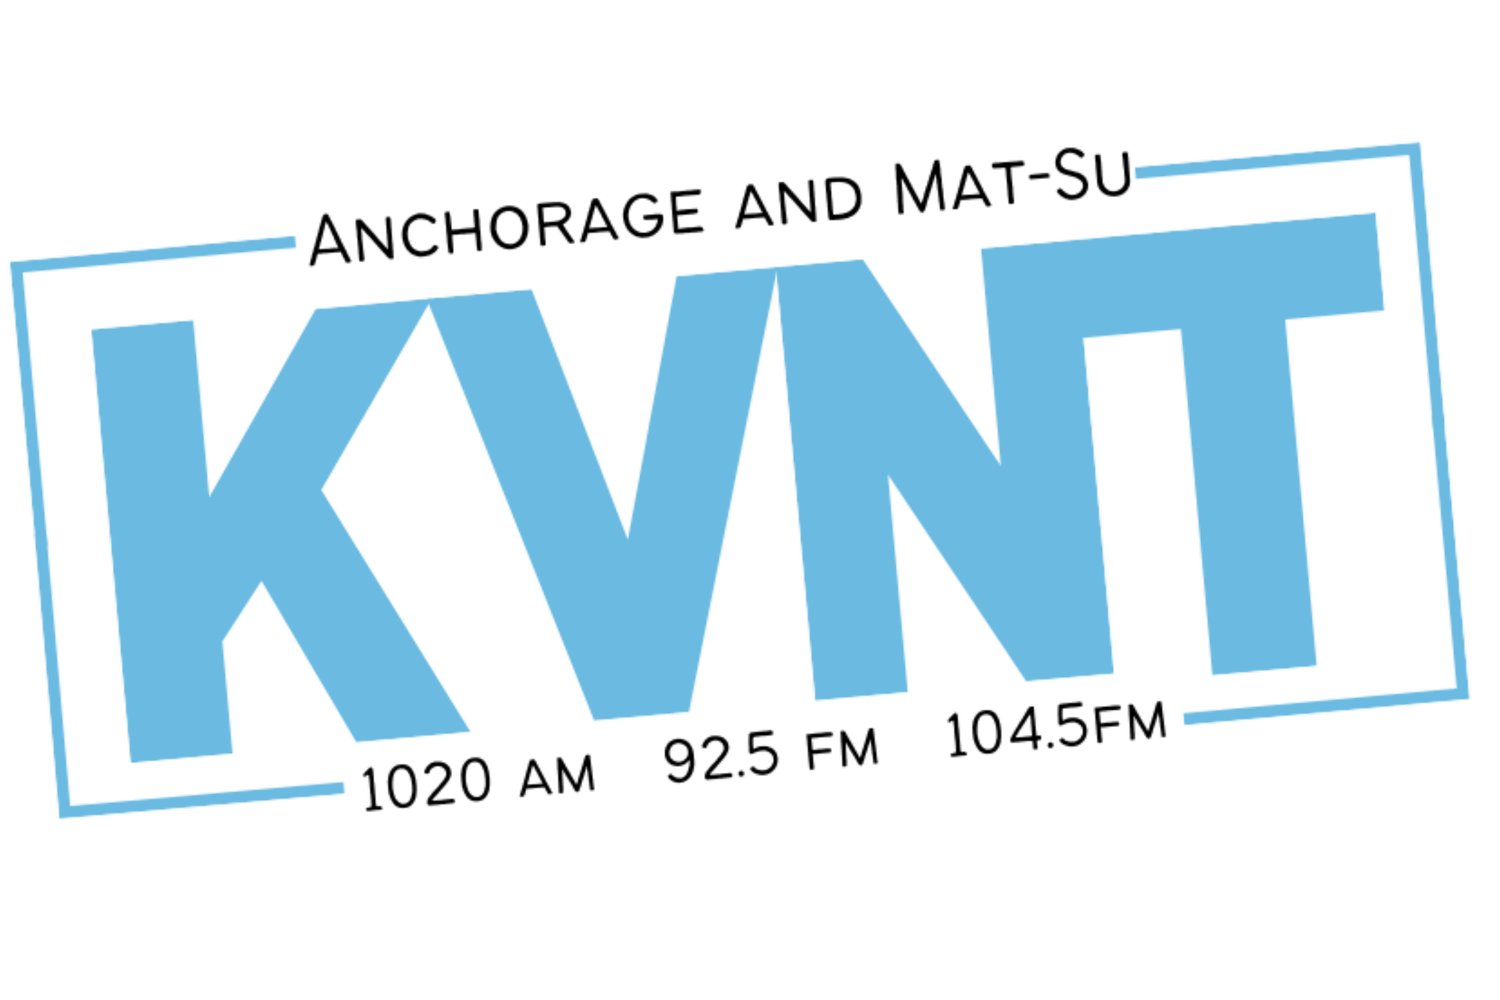 KVNT - Valley News Talk